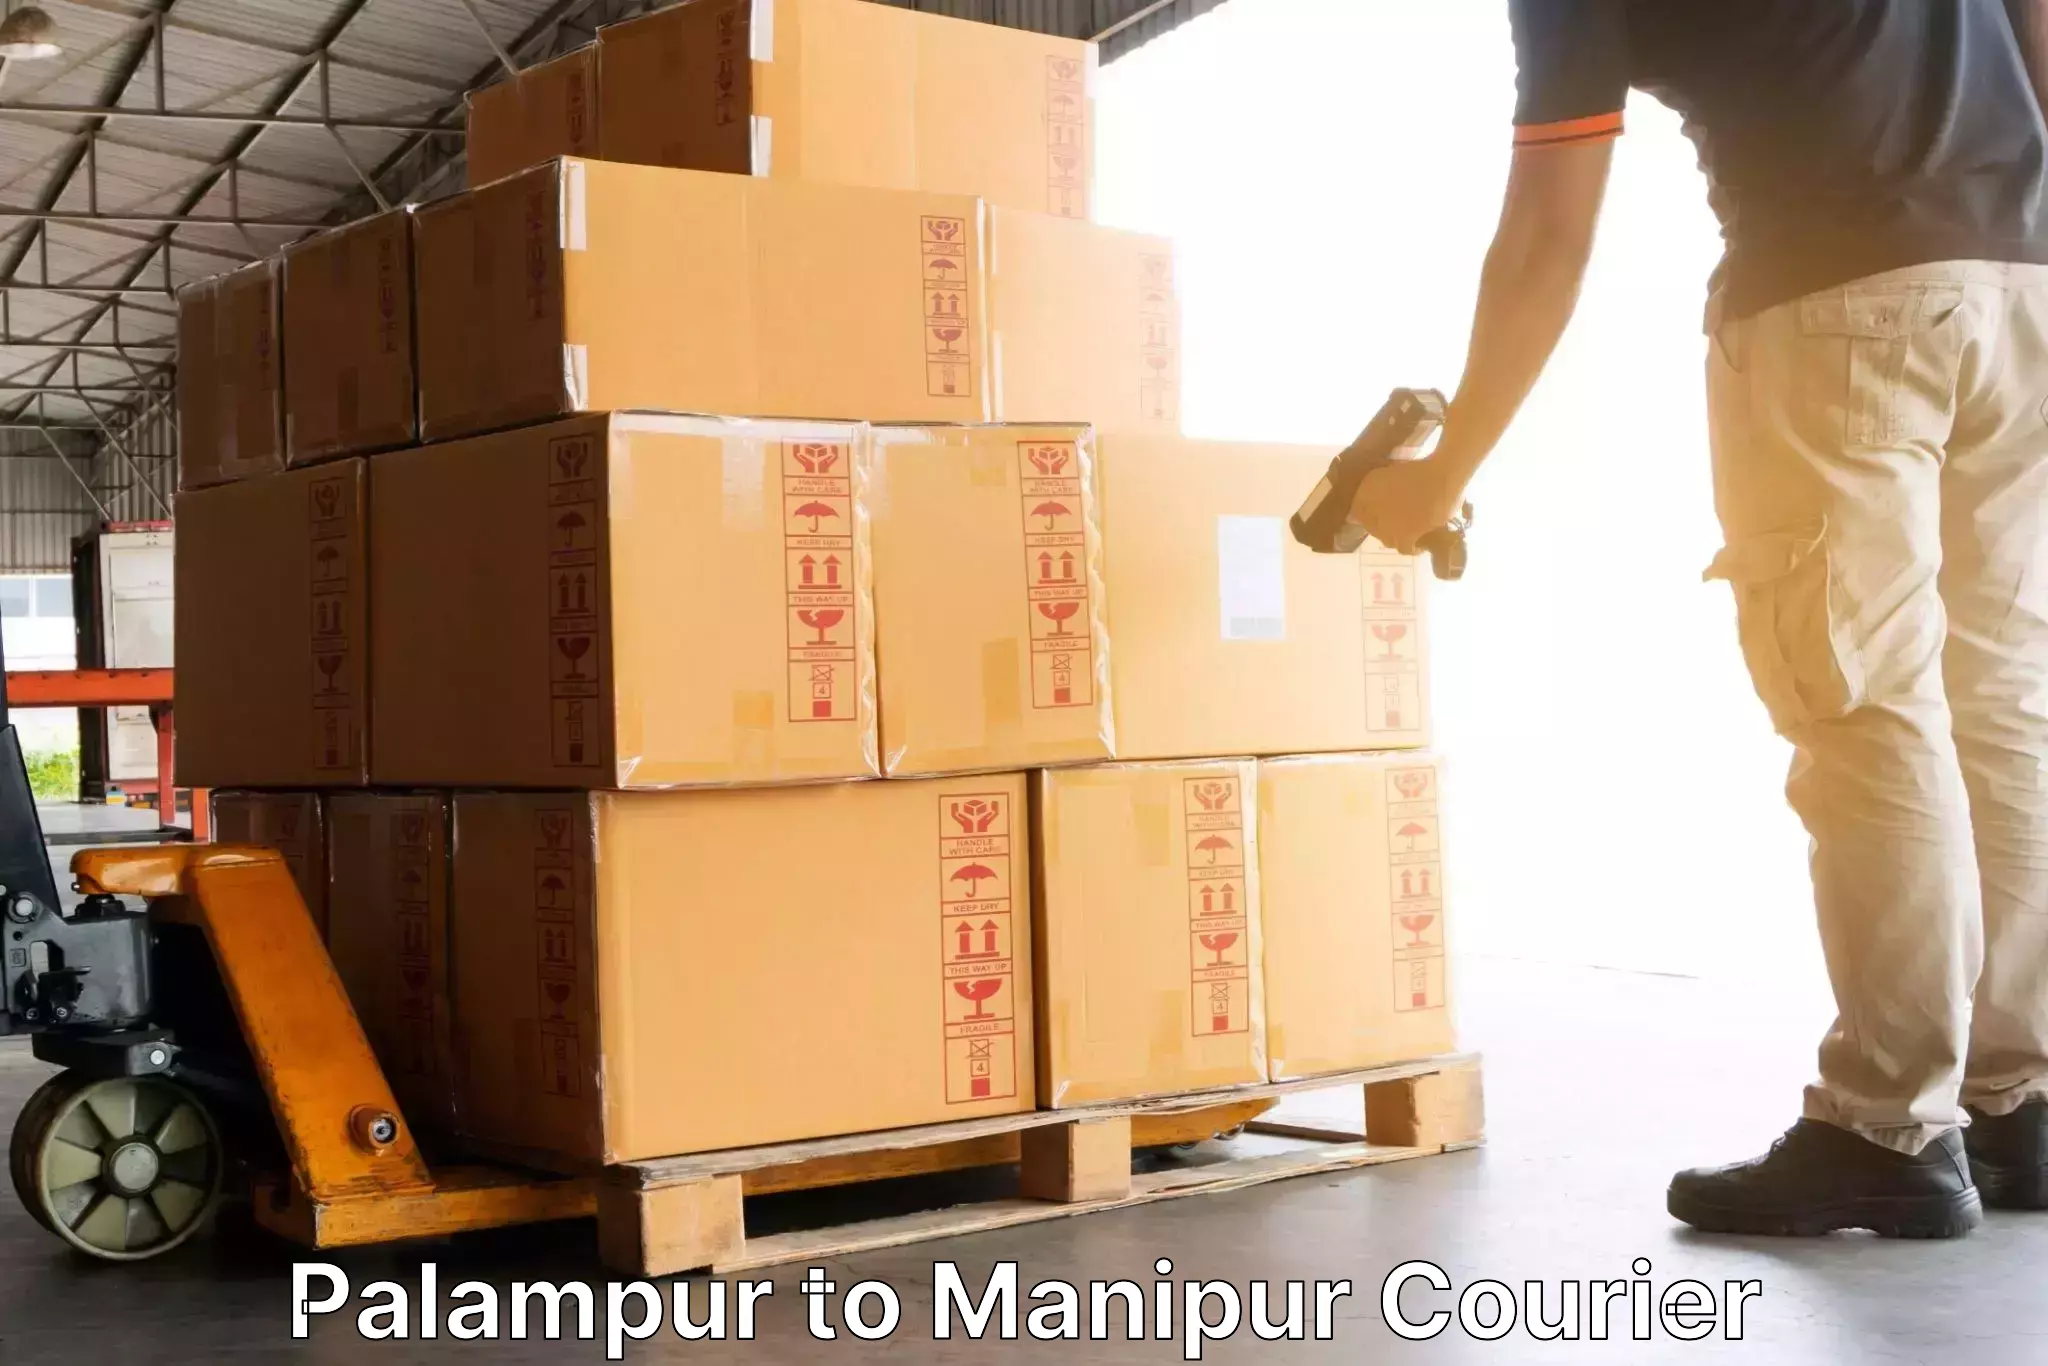 Global shipping networks Palampur to Moirang